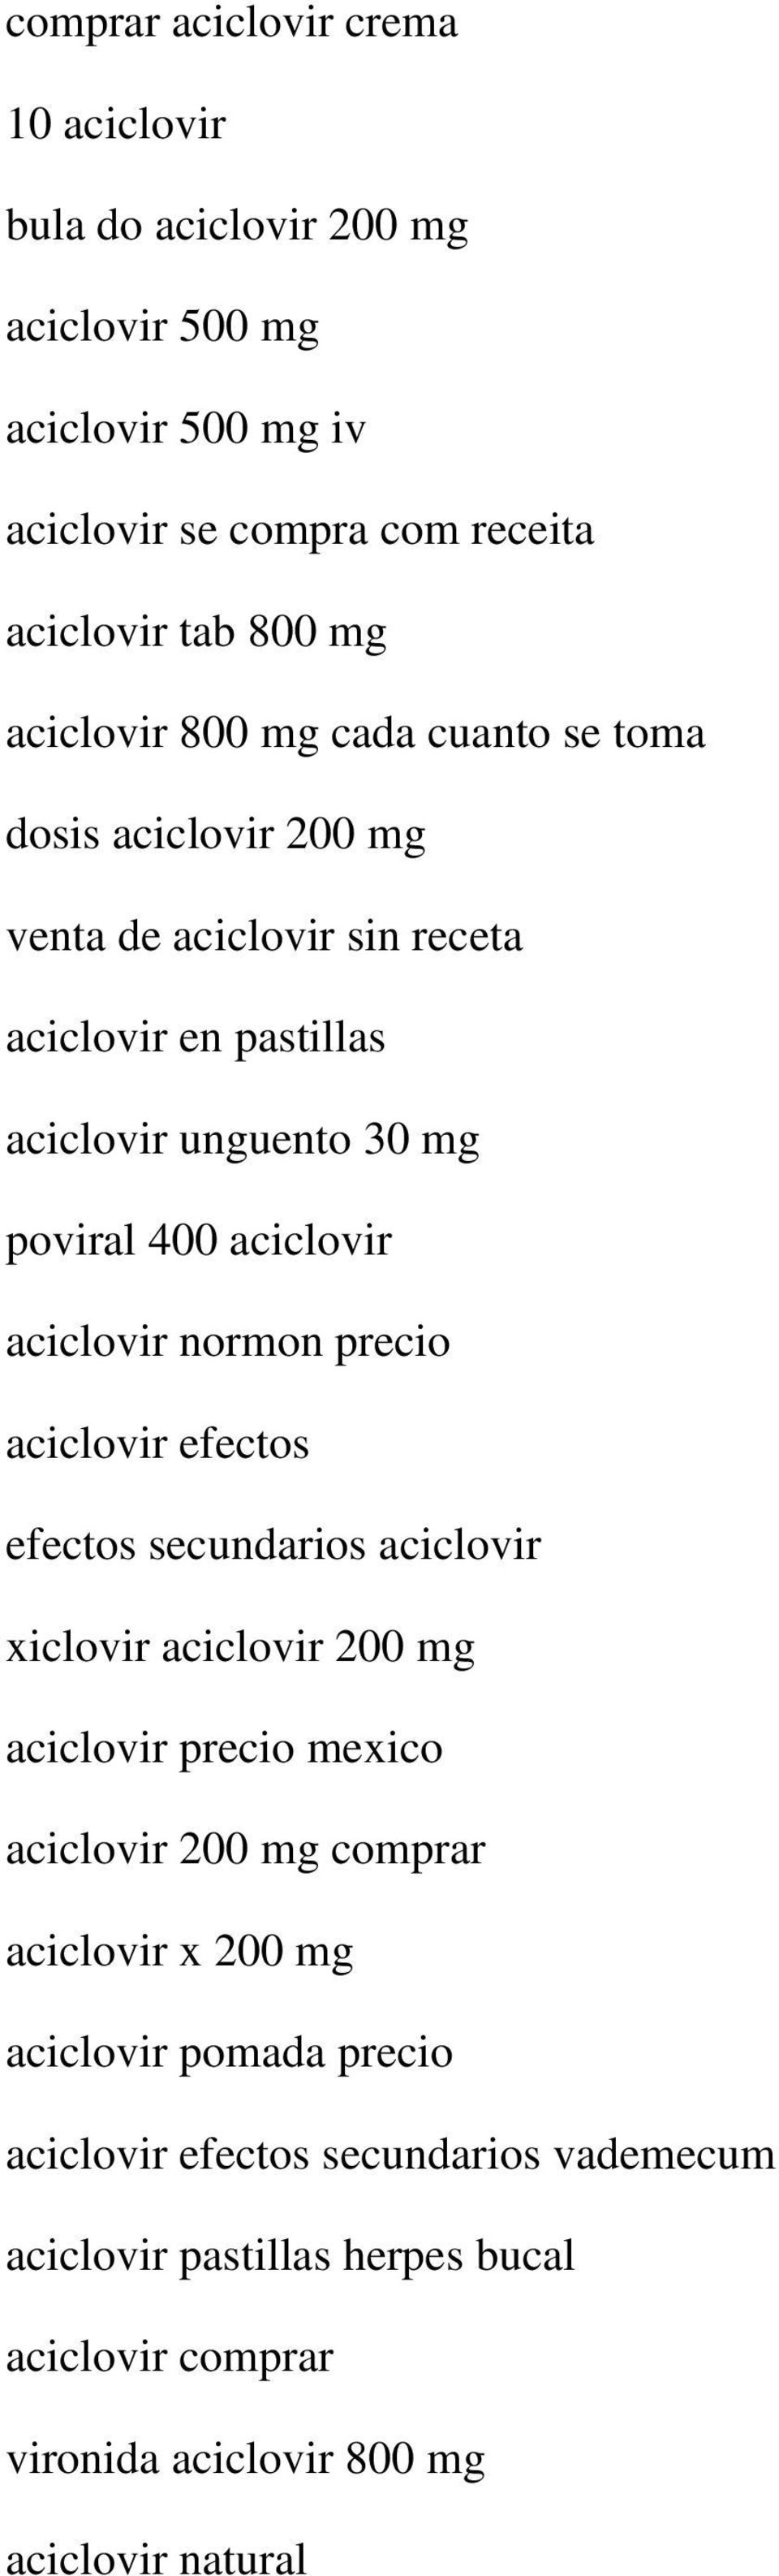 aciclovir aciclovir normon precio aciclovir efectos efectos secundarios aciclovir xiclovir aciclovir 200 mg aciclovir precio mexico aciclovir 200 mg comprar